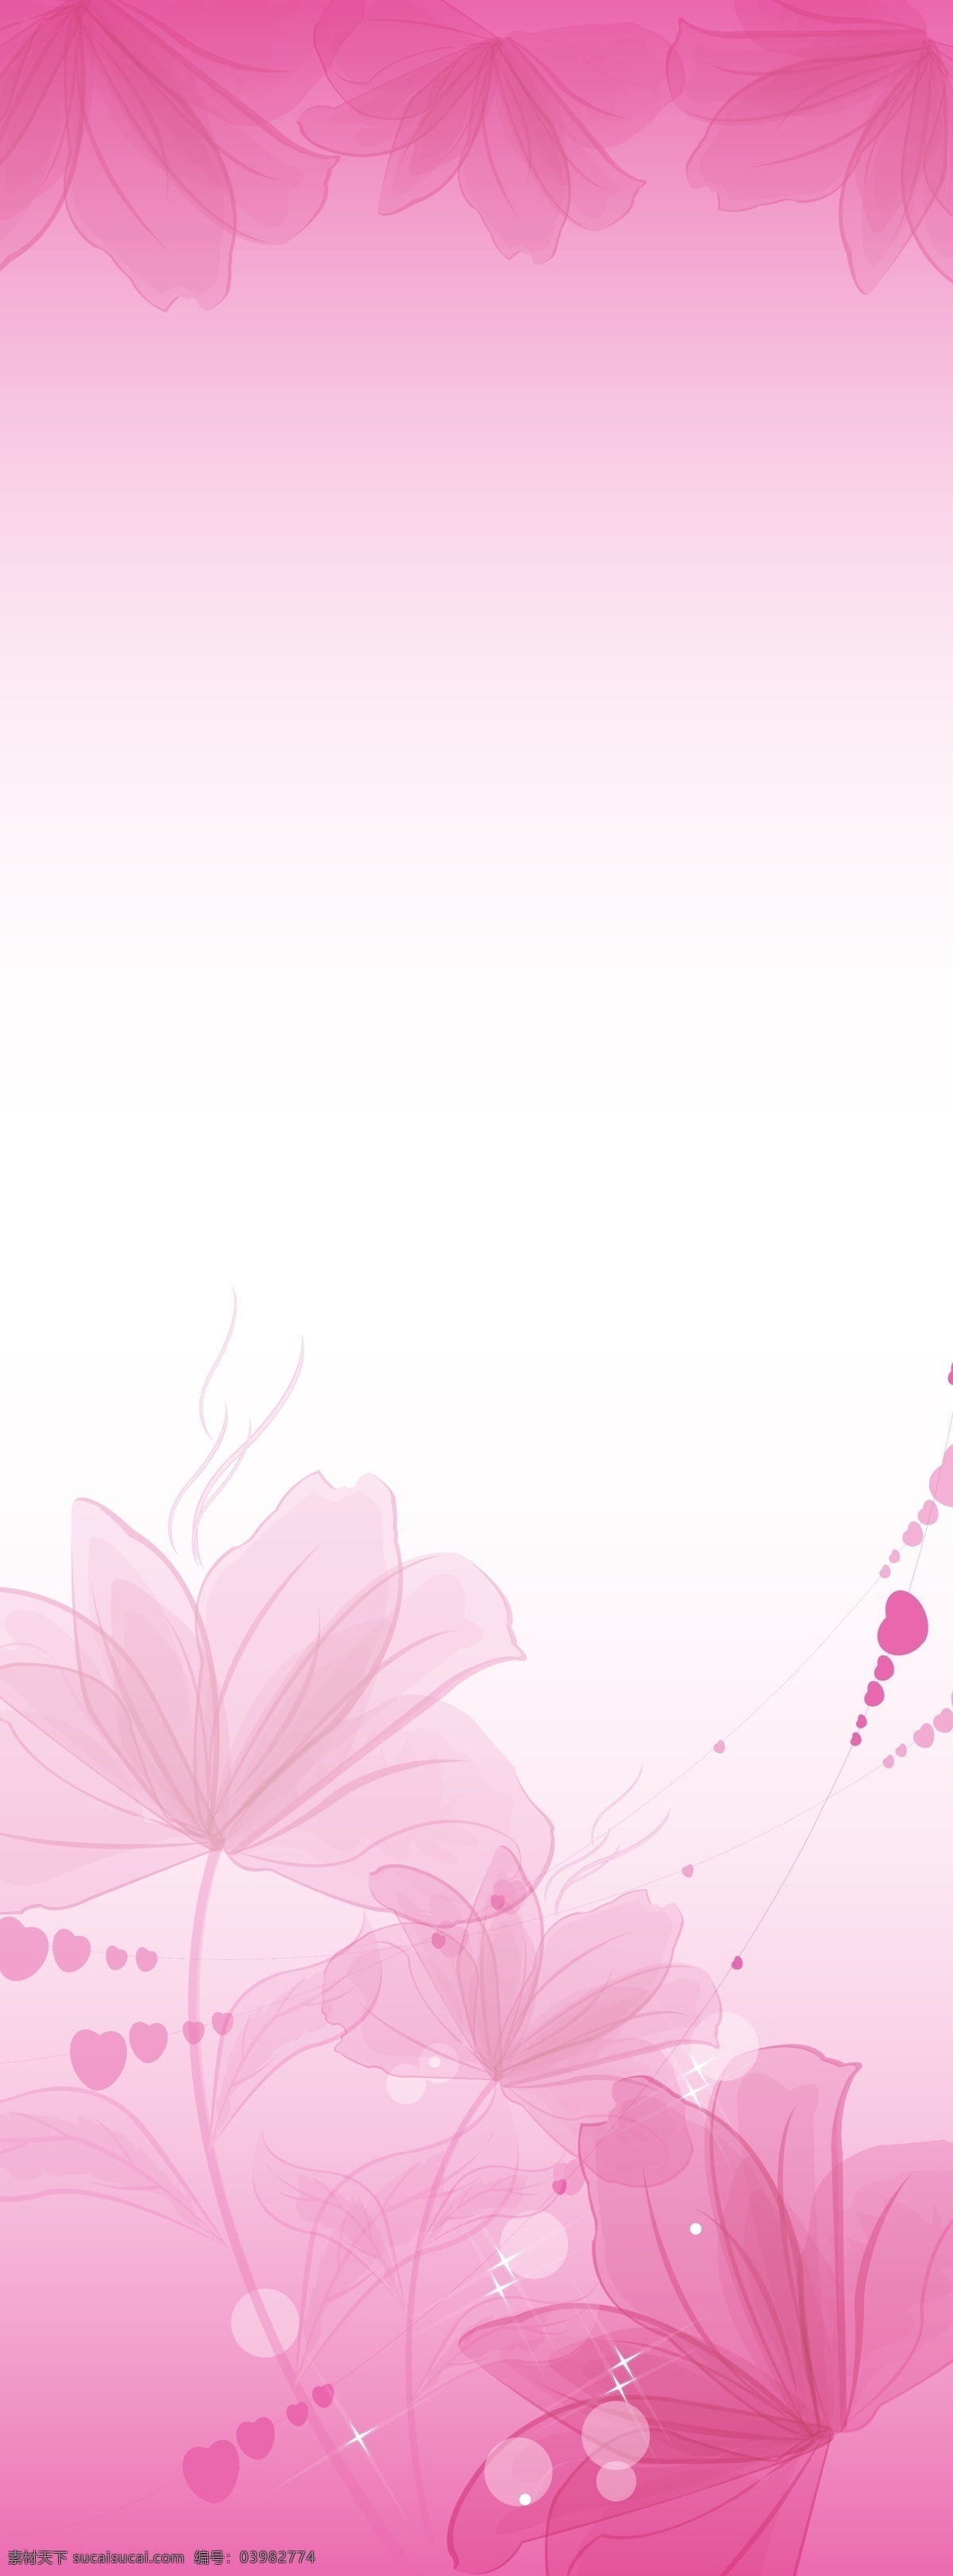 鲜花 展板 背景图片 x展架 粉红 粉红背景 广告设计模板 花 鲜花展板背景 易拉宝 源文件 展板背景 展板模板 其他展板设计